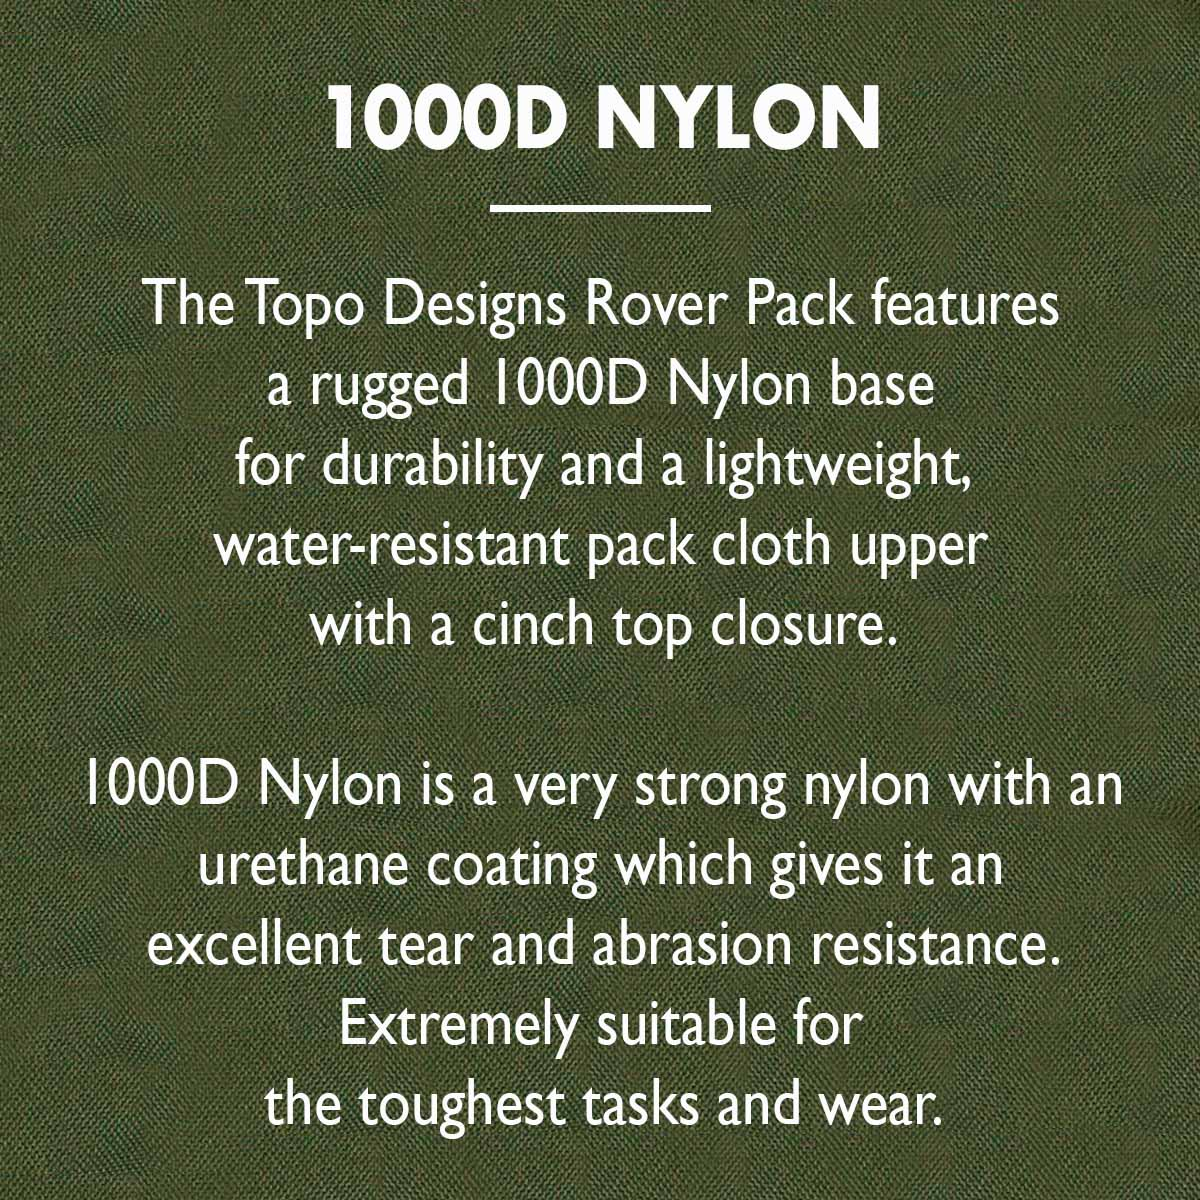 Topo Designs Rover Pack Classic 1000D Nylon